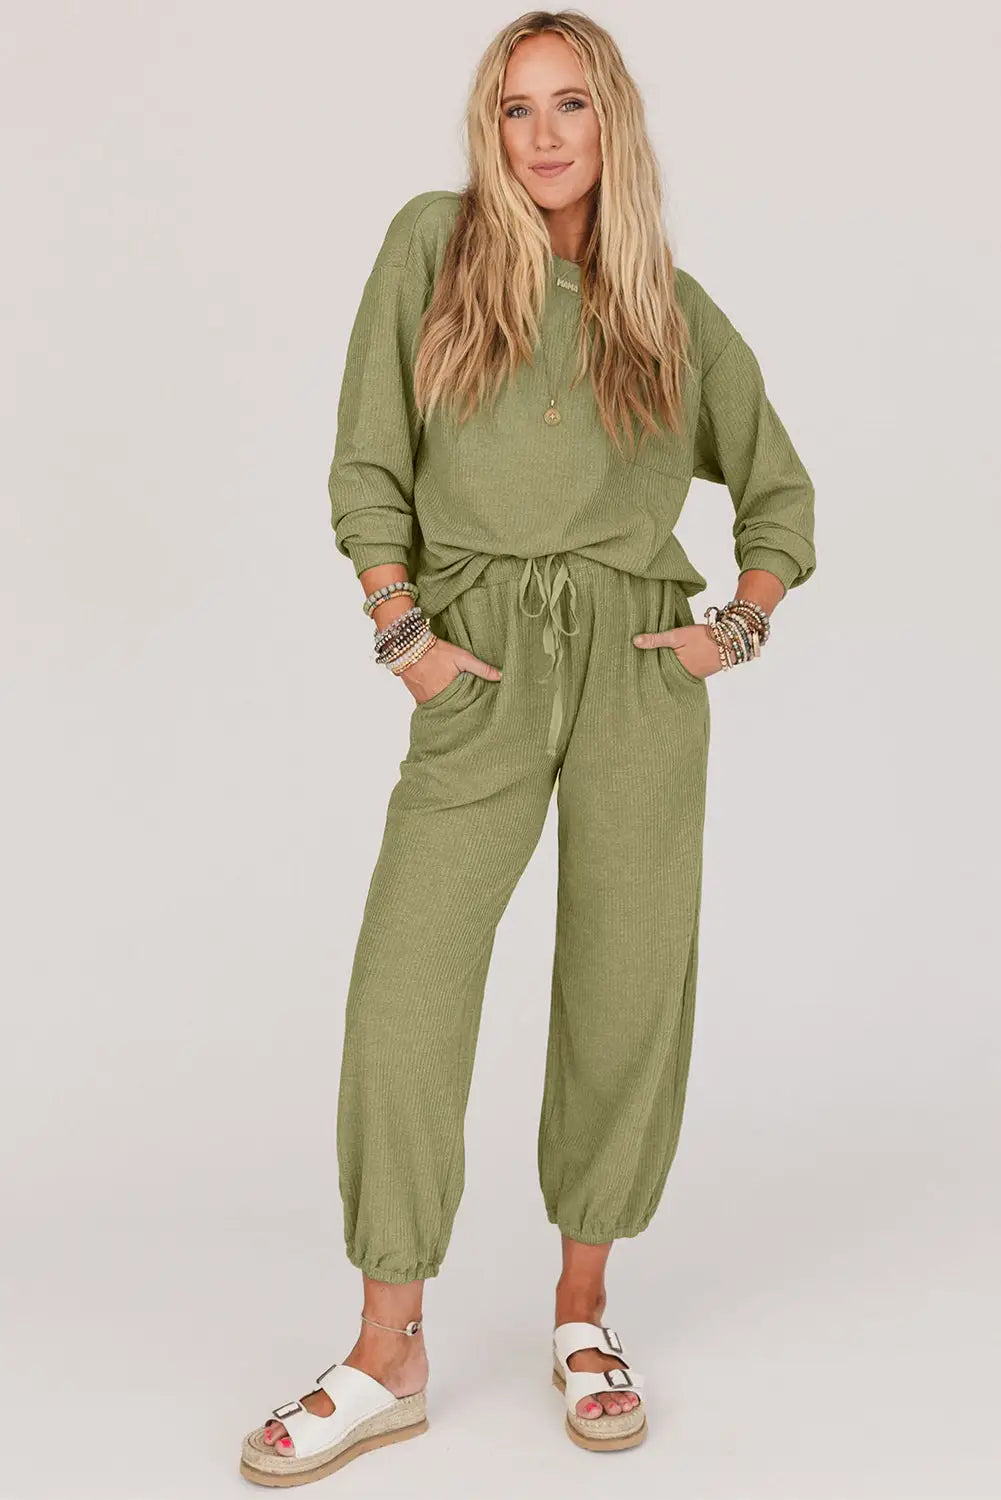 Laurel green waffle knit long sleeve top drawstring joggers set - sets